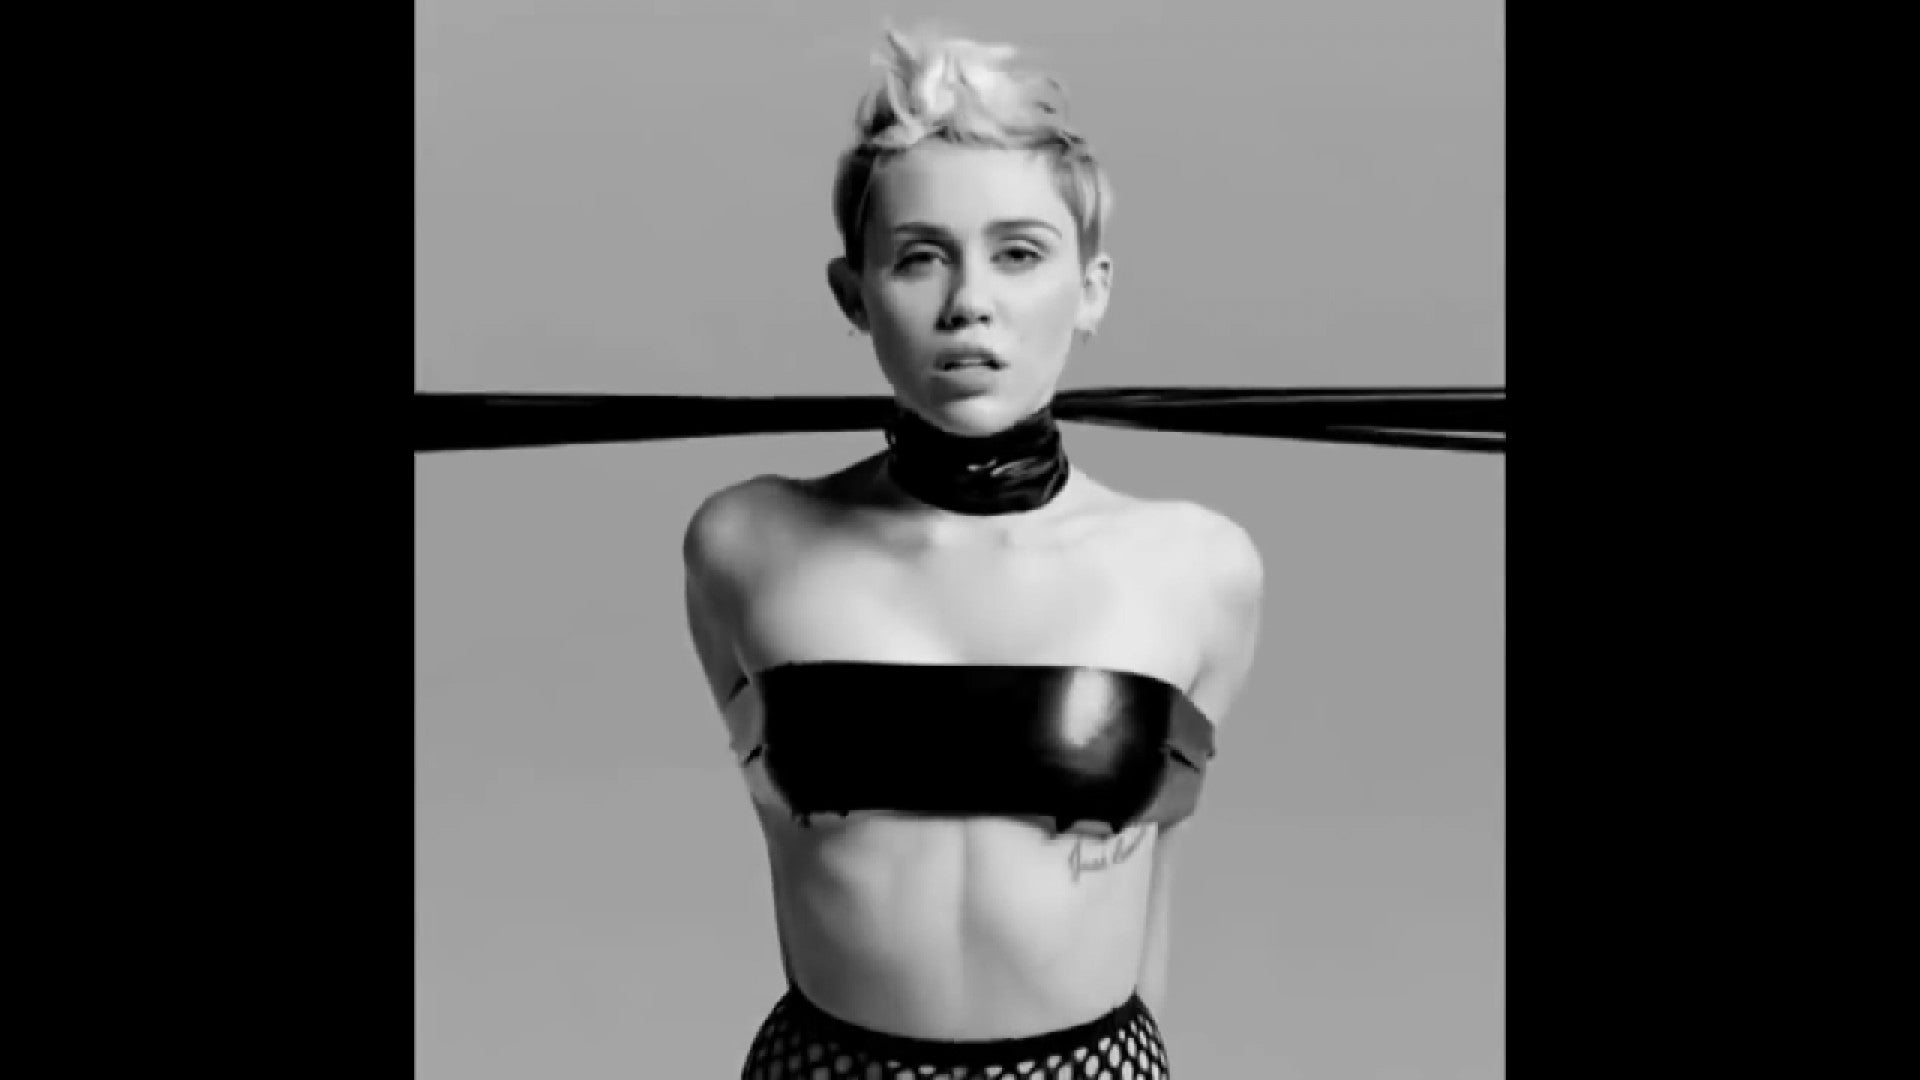 Miley Cyrus Sex Vid